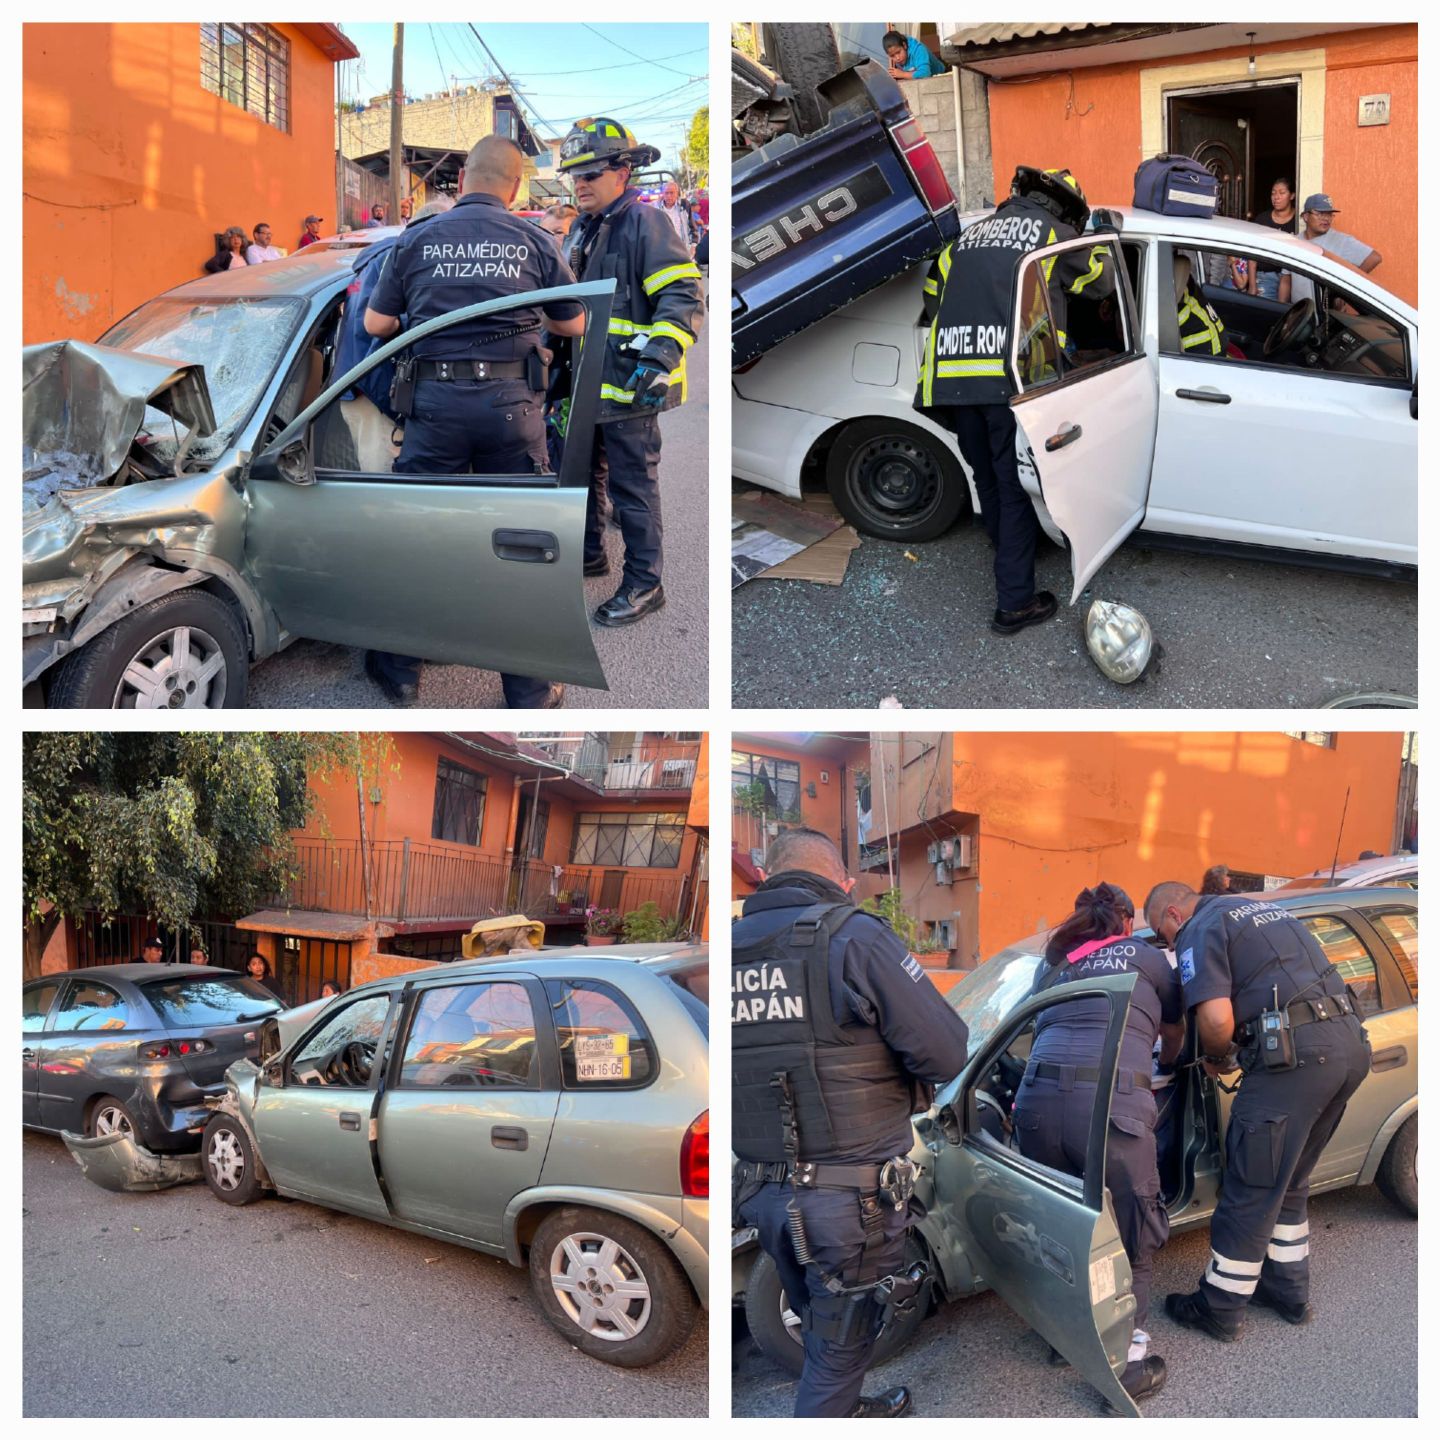 Chevy sin frenos arrolla a varios vehículos y deja cuatro heridos en Atizapán de Zaragoza 